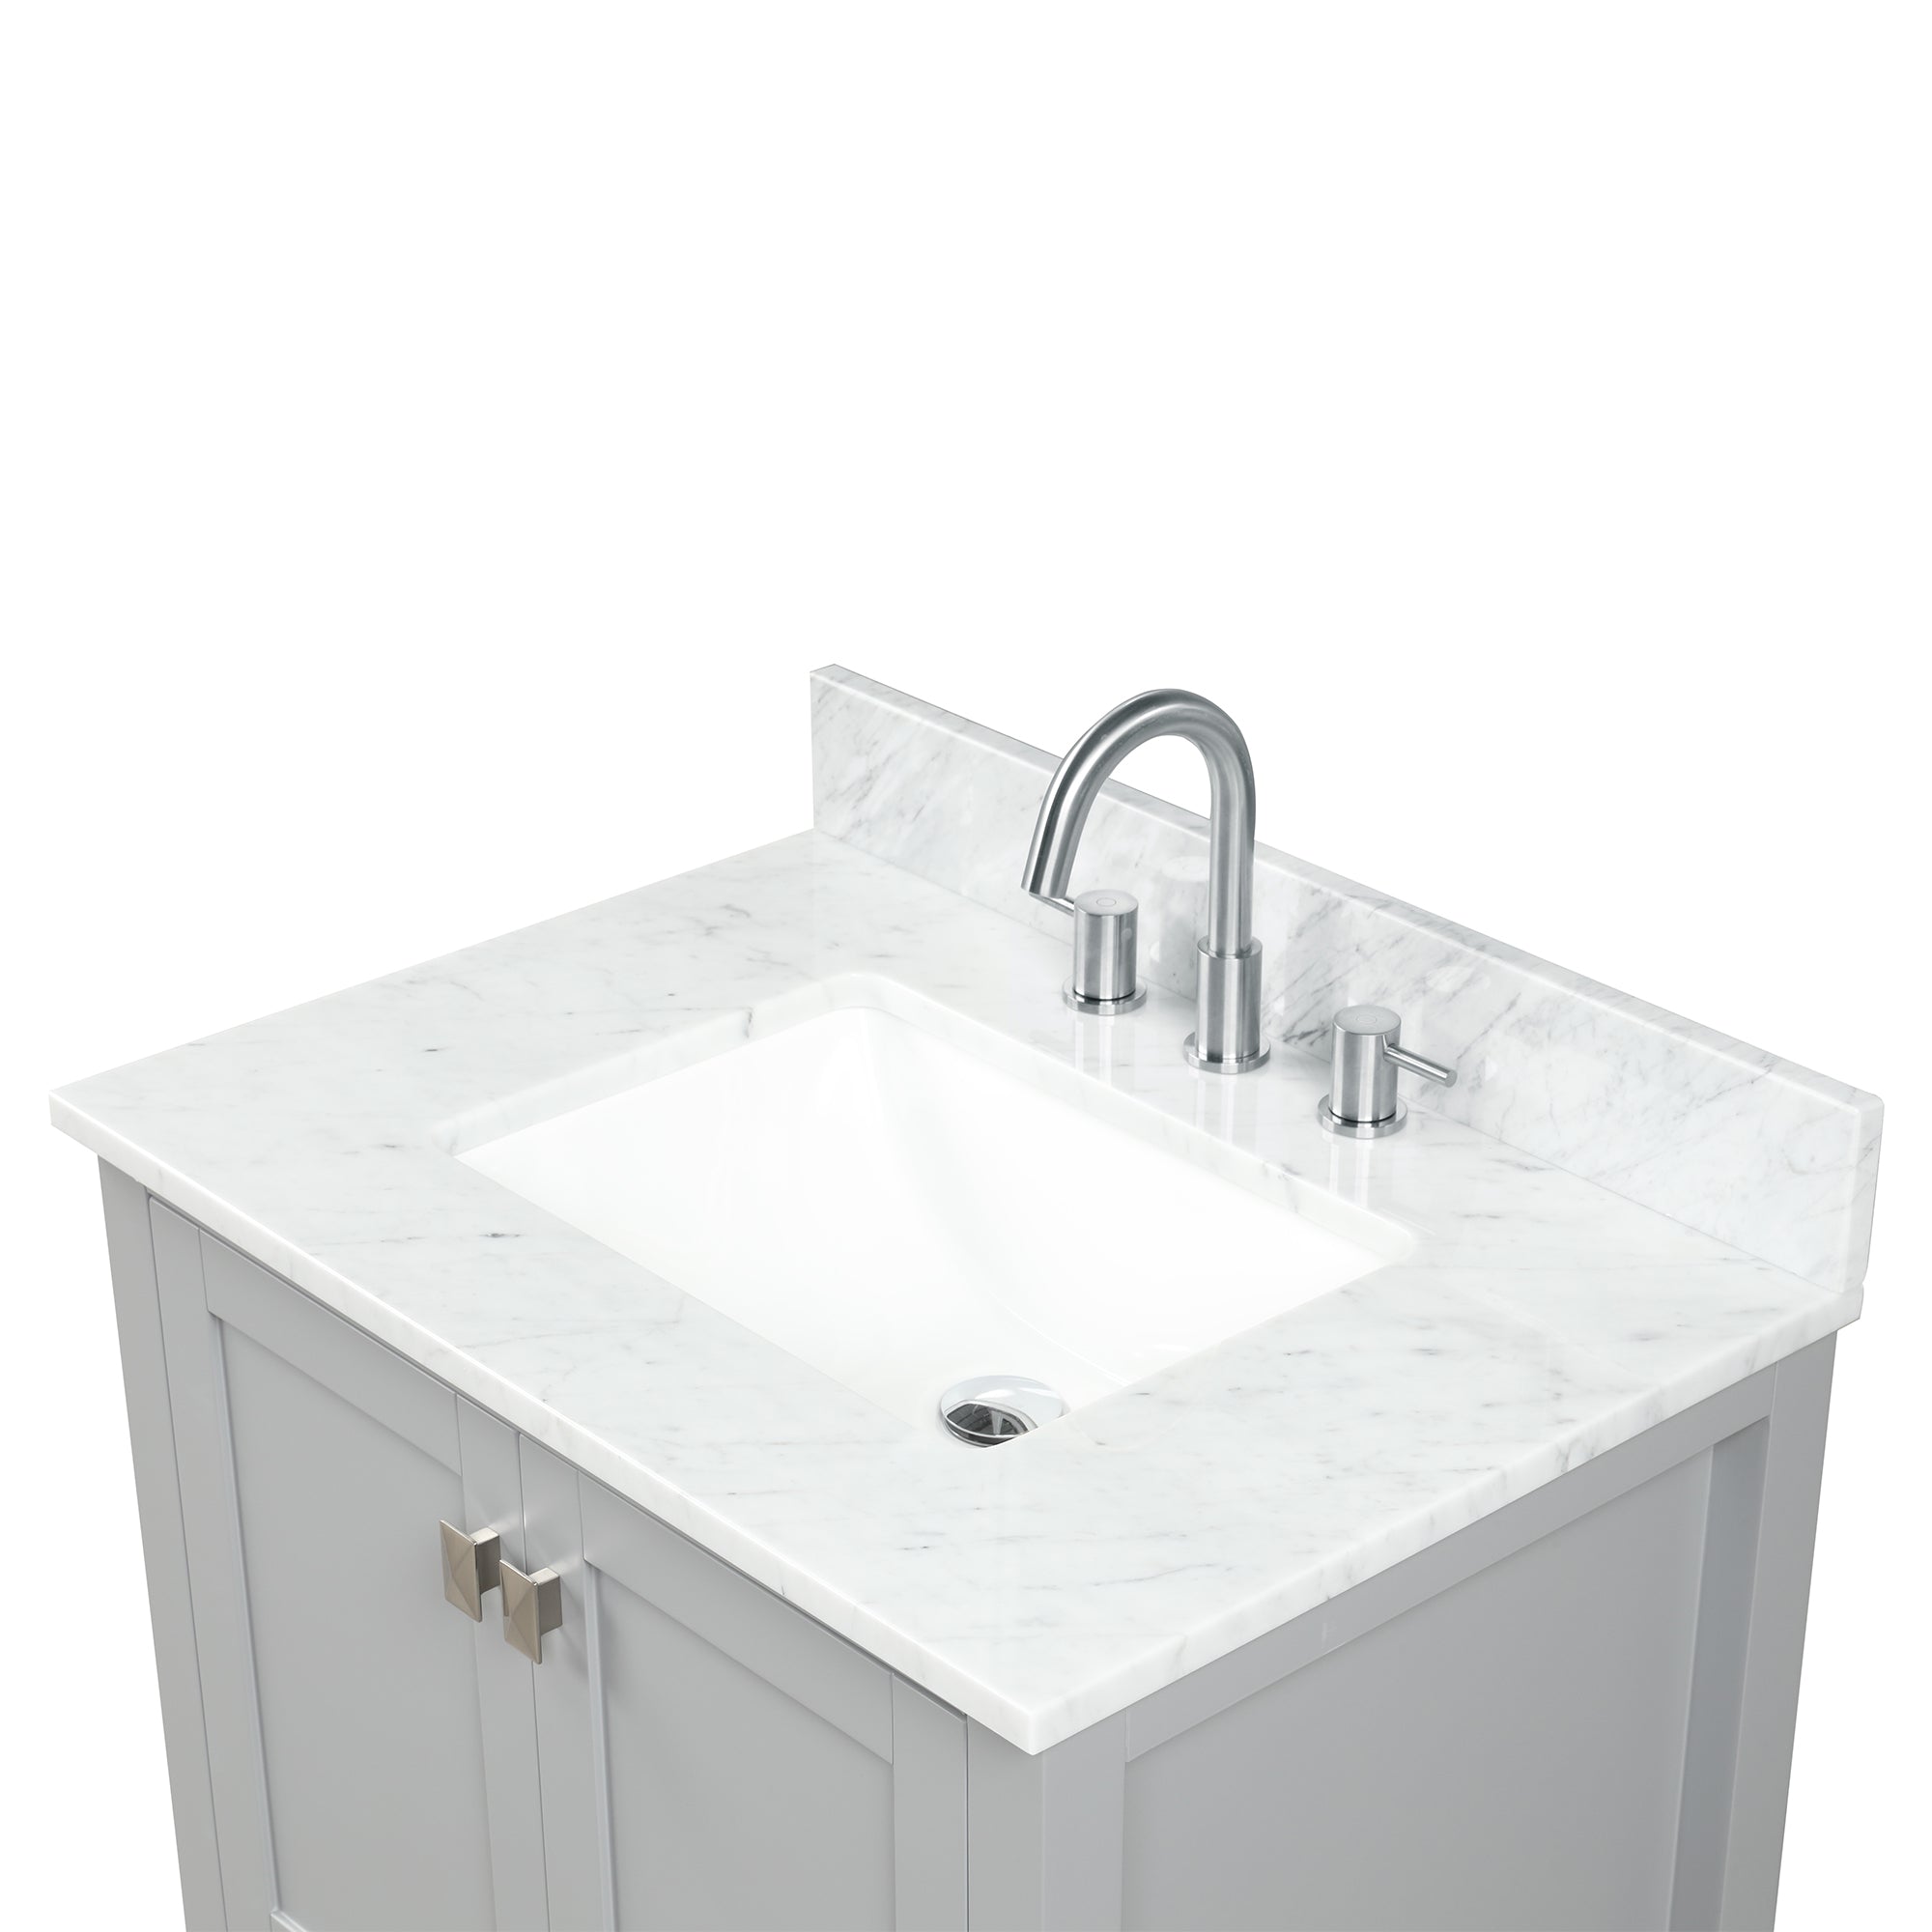 Geneva 30" Grey Bathroom Vanity with Marble Countertop - Contemporary Bathroom Vanity